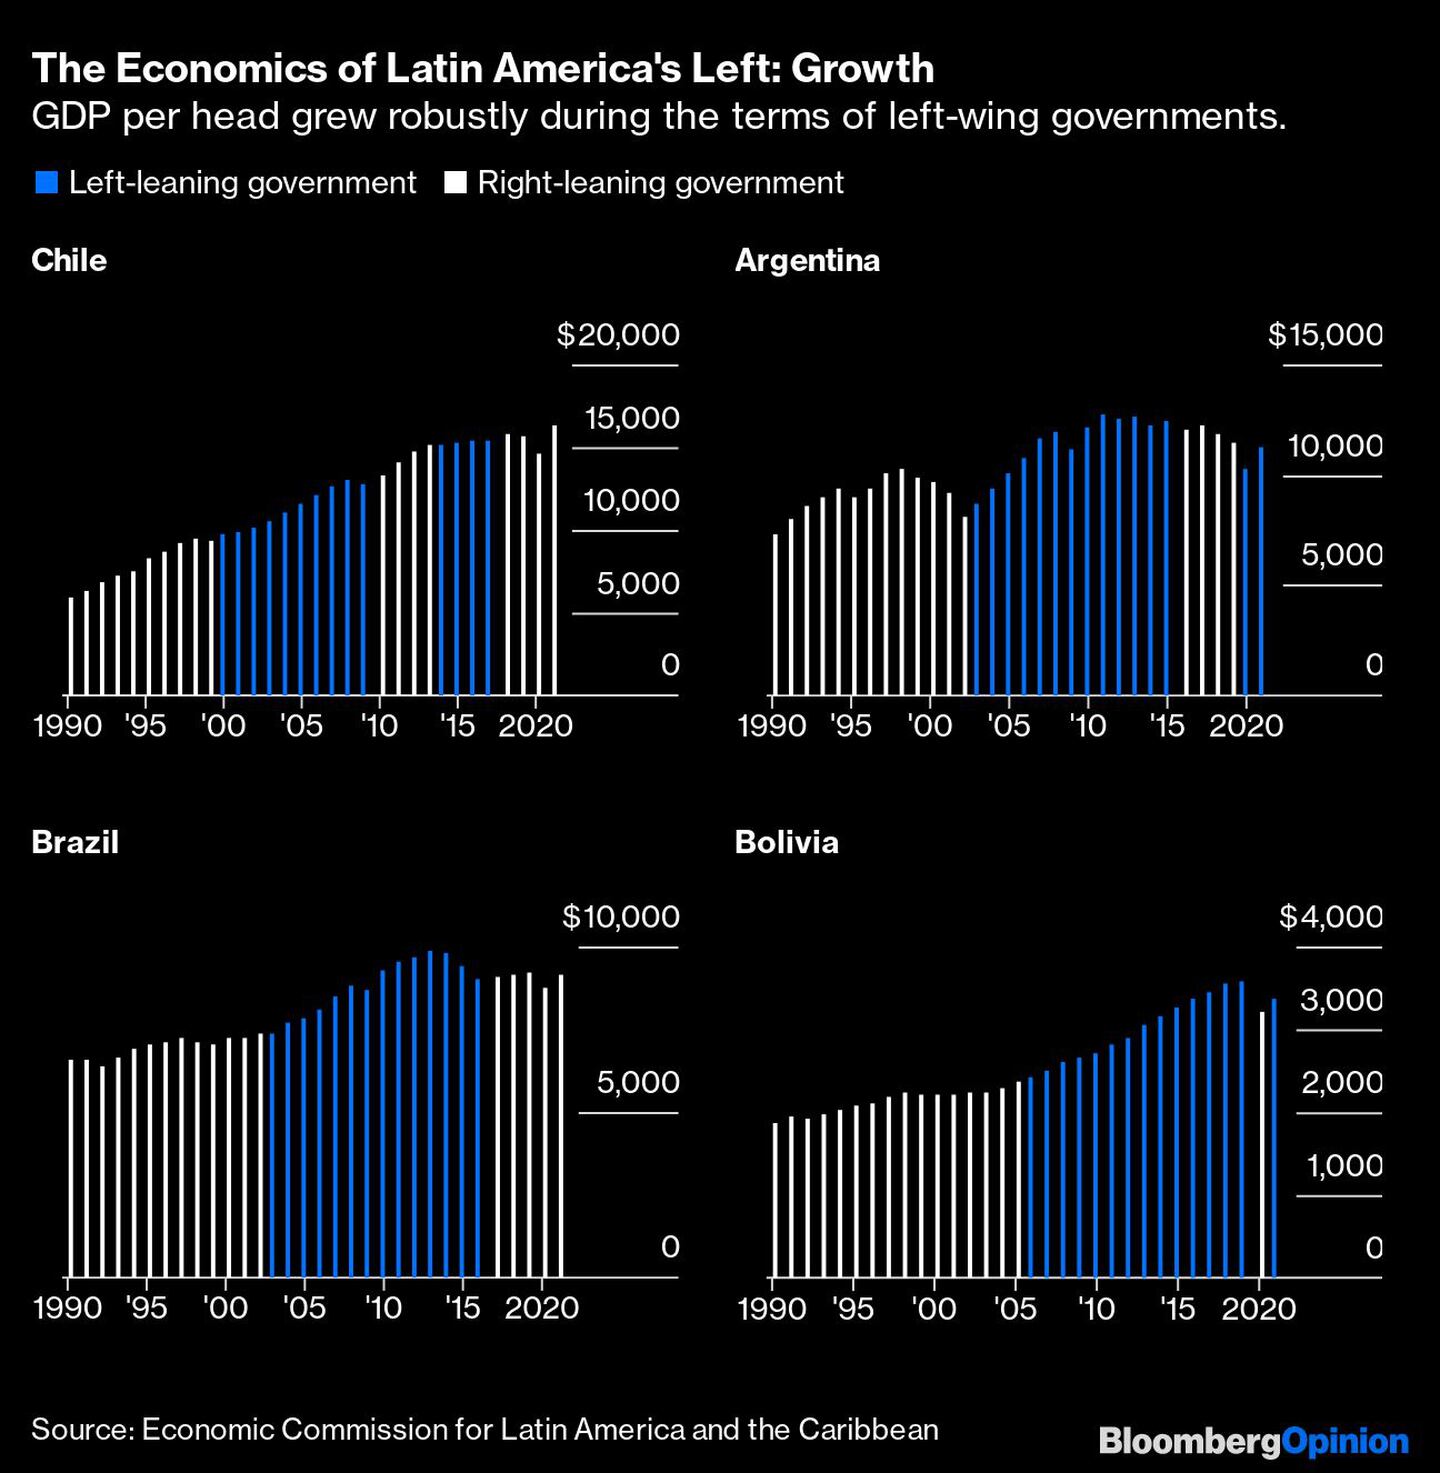 El PIB per cápita creció fuertemente durante los mandatos de los gobiernos de izquierdadfd